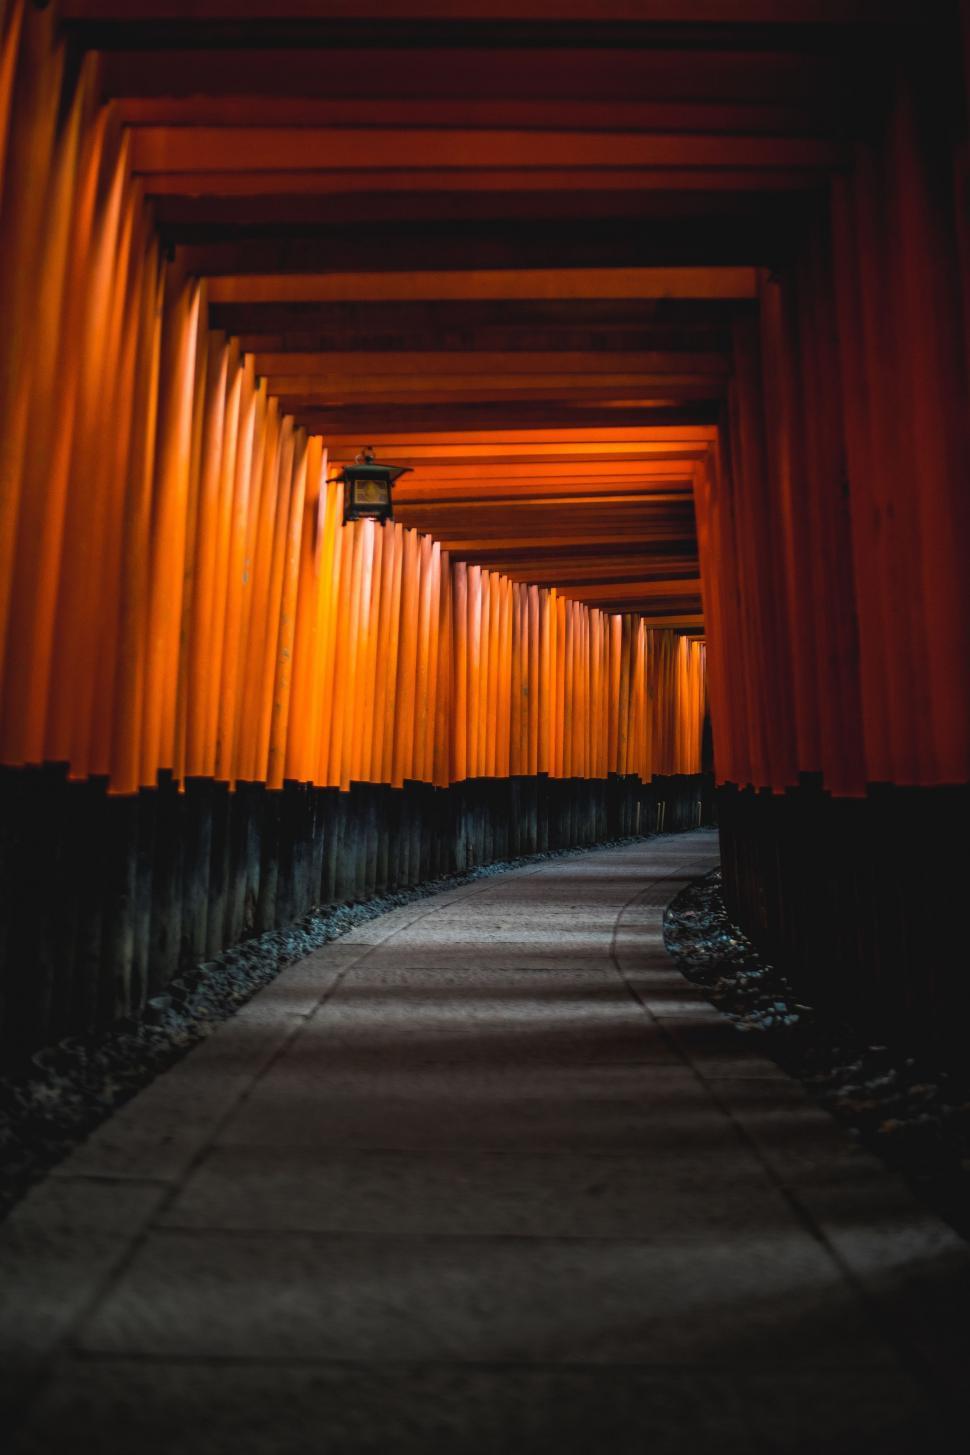 Free Image of Orange torii gates 